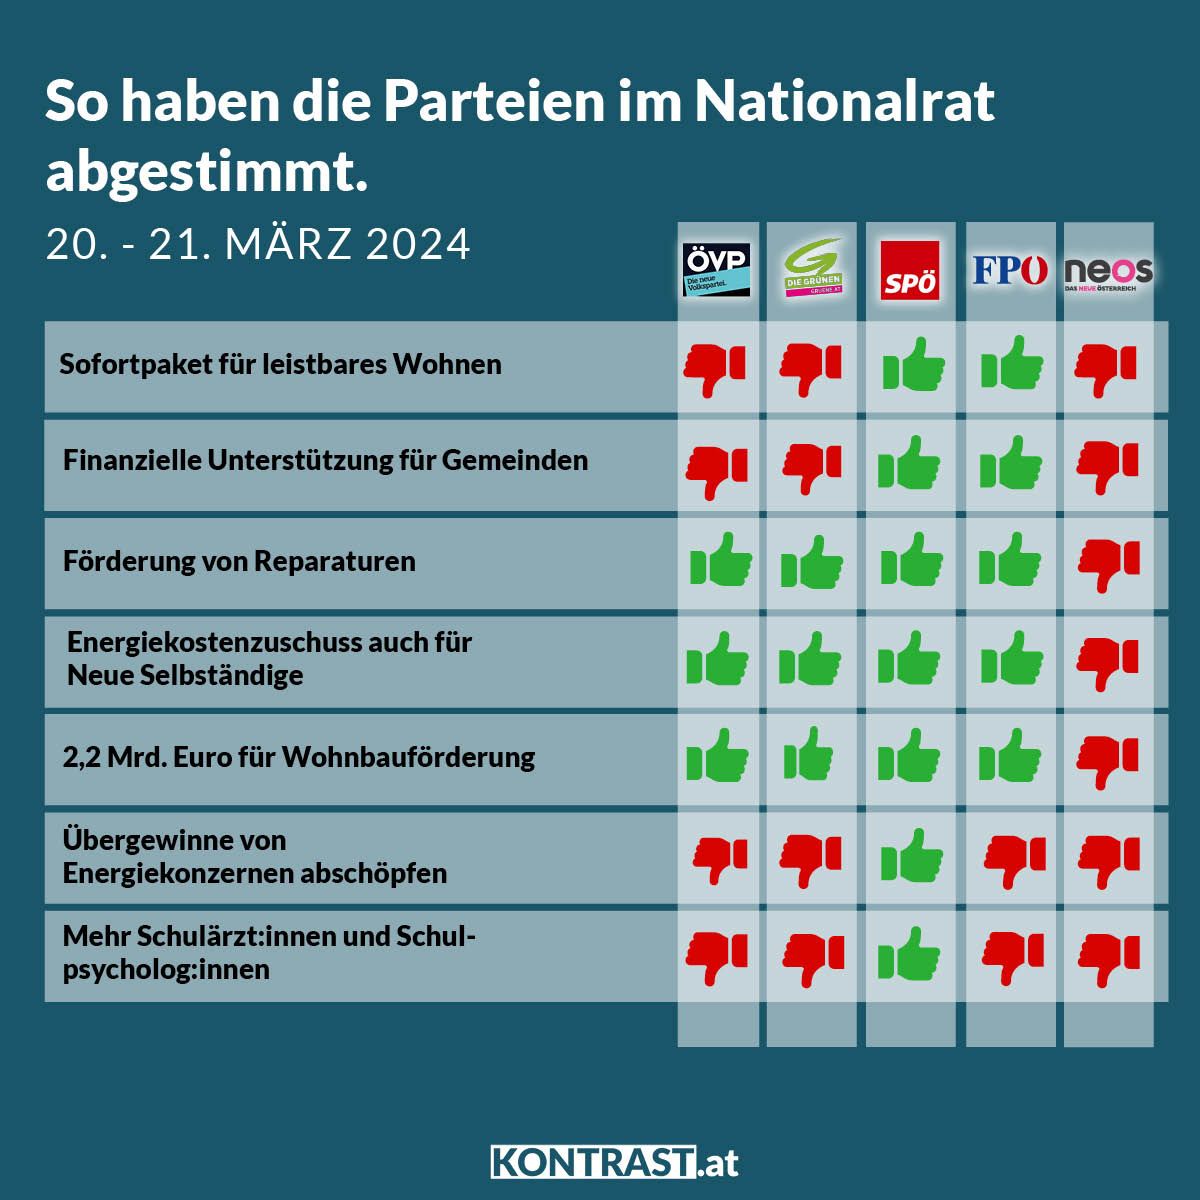 Nationalratssitzung vom 20. bis 21. März 2024: So haben die Parteien abgestimmt!